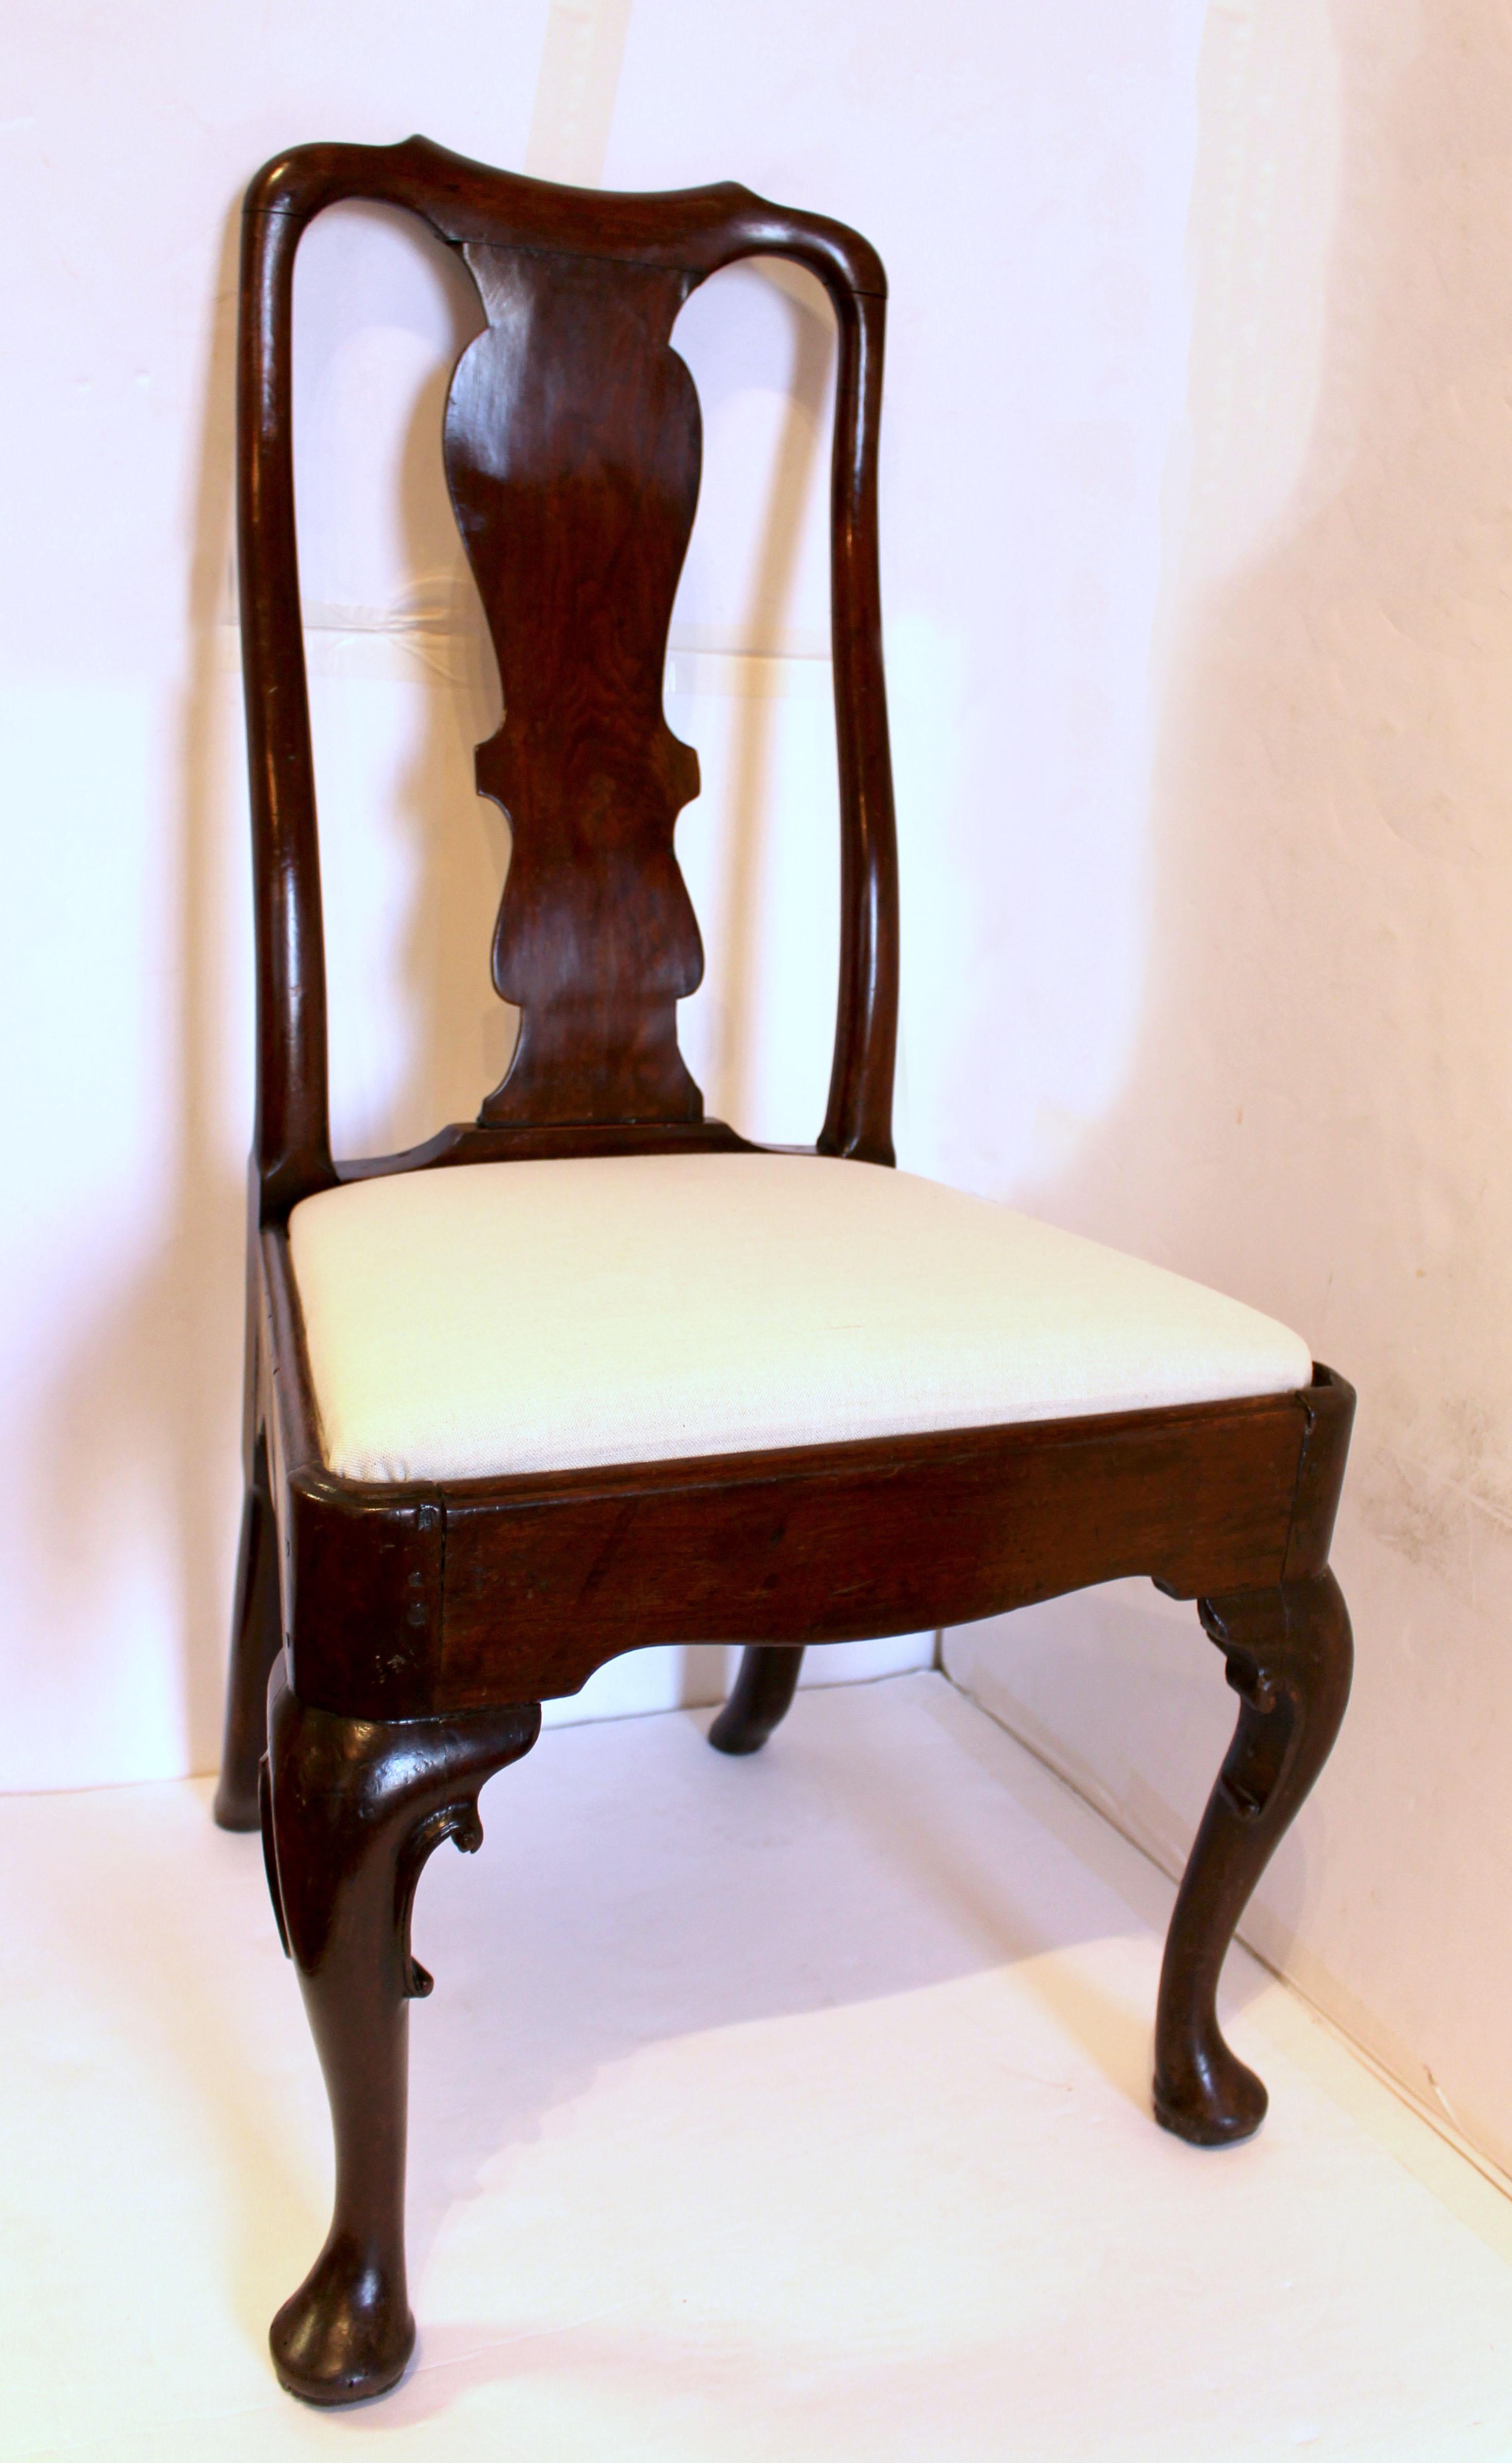 Circa 1720-40 Chaise latérale Queen Anne, anglaise. Noyer. Elle repose sur des pieds cabriole bien formés et sculptés en forme de volutes, qui se terminent par des pieds en coussinets. Retours façonnés. Les pattes arrière sont déportées. Dosseret de